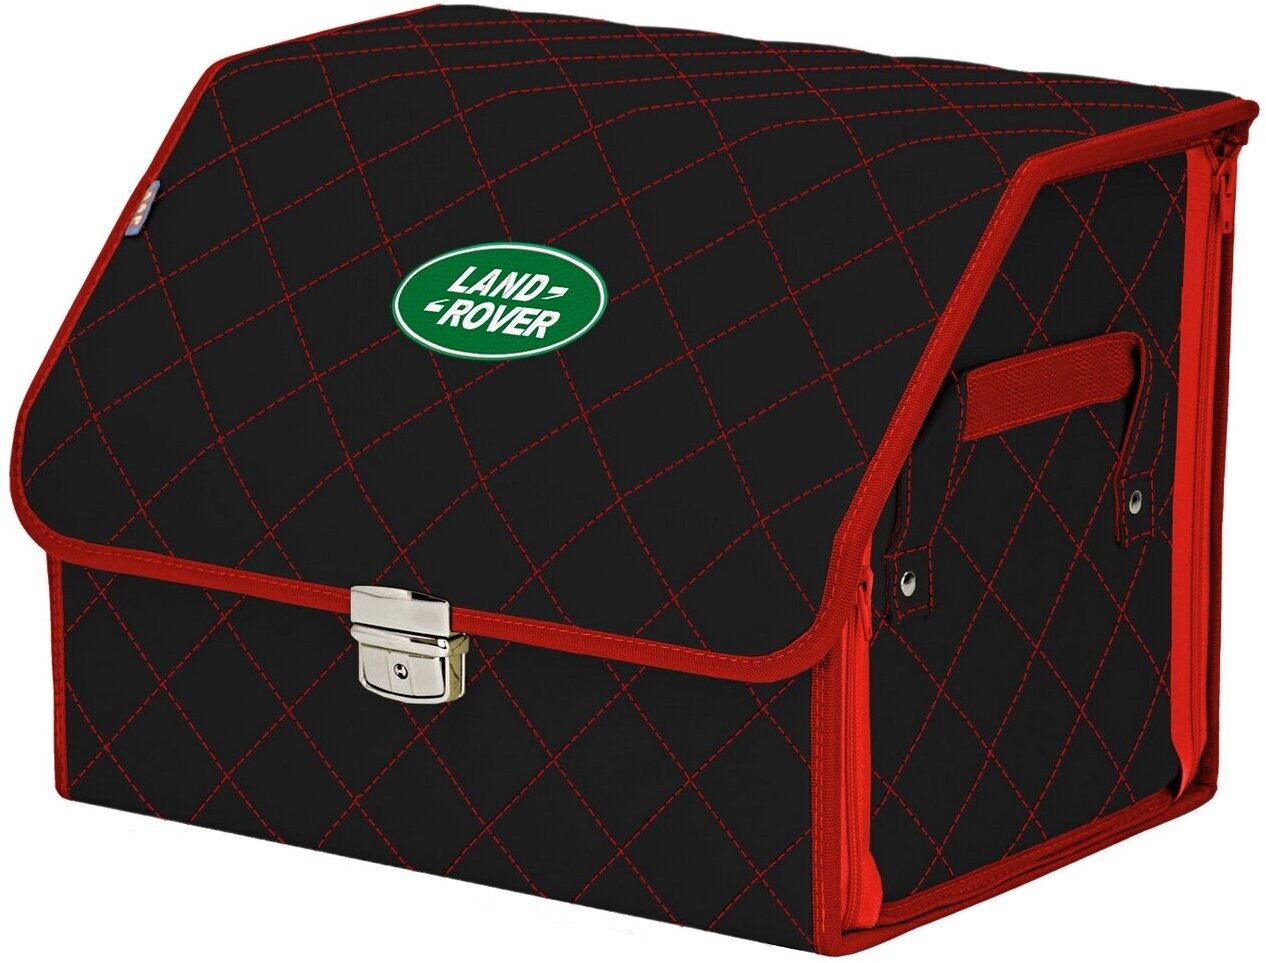 Органайзер-саквояж в багажник "Союз Премиум" (размер M). Цвет: черный с красной прострочкой Ромб и вышивкой Land Rover (Ленд Ровер).